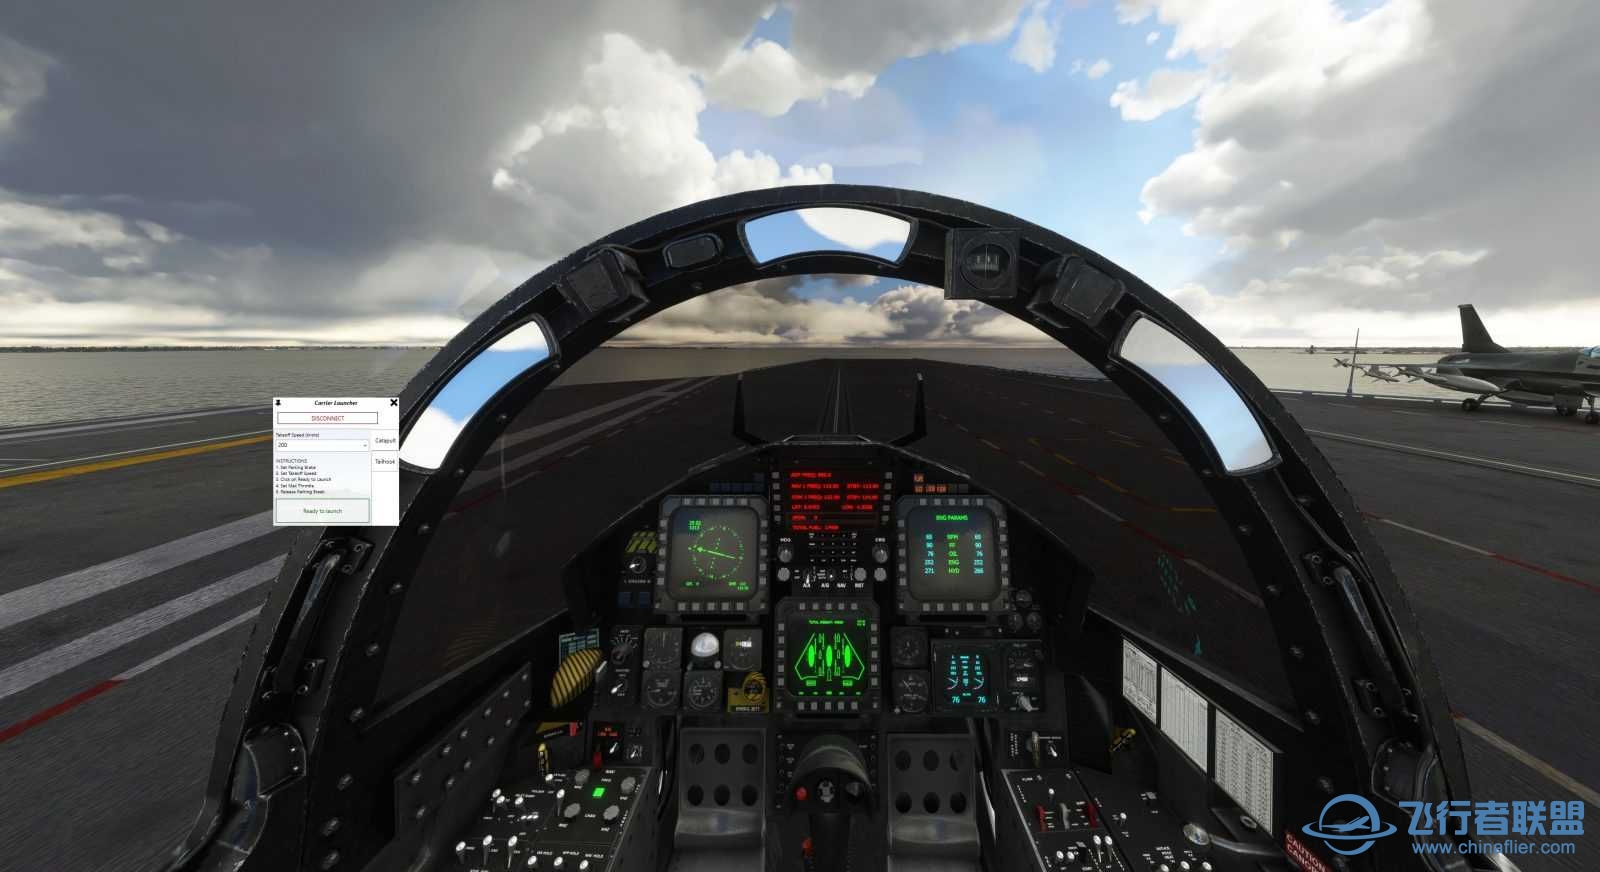 Miltech Simulations 发布美国乔治·H·W·布什航空母舰-5741 